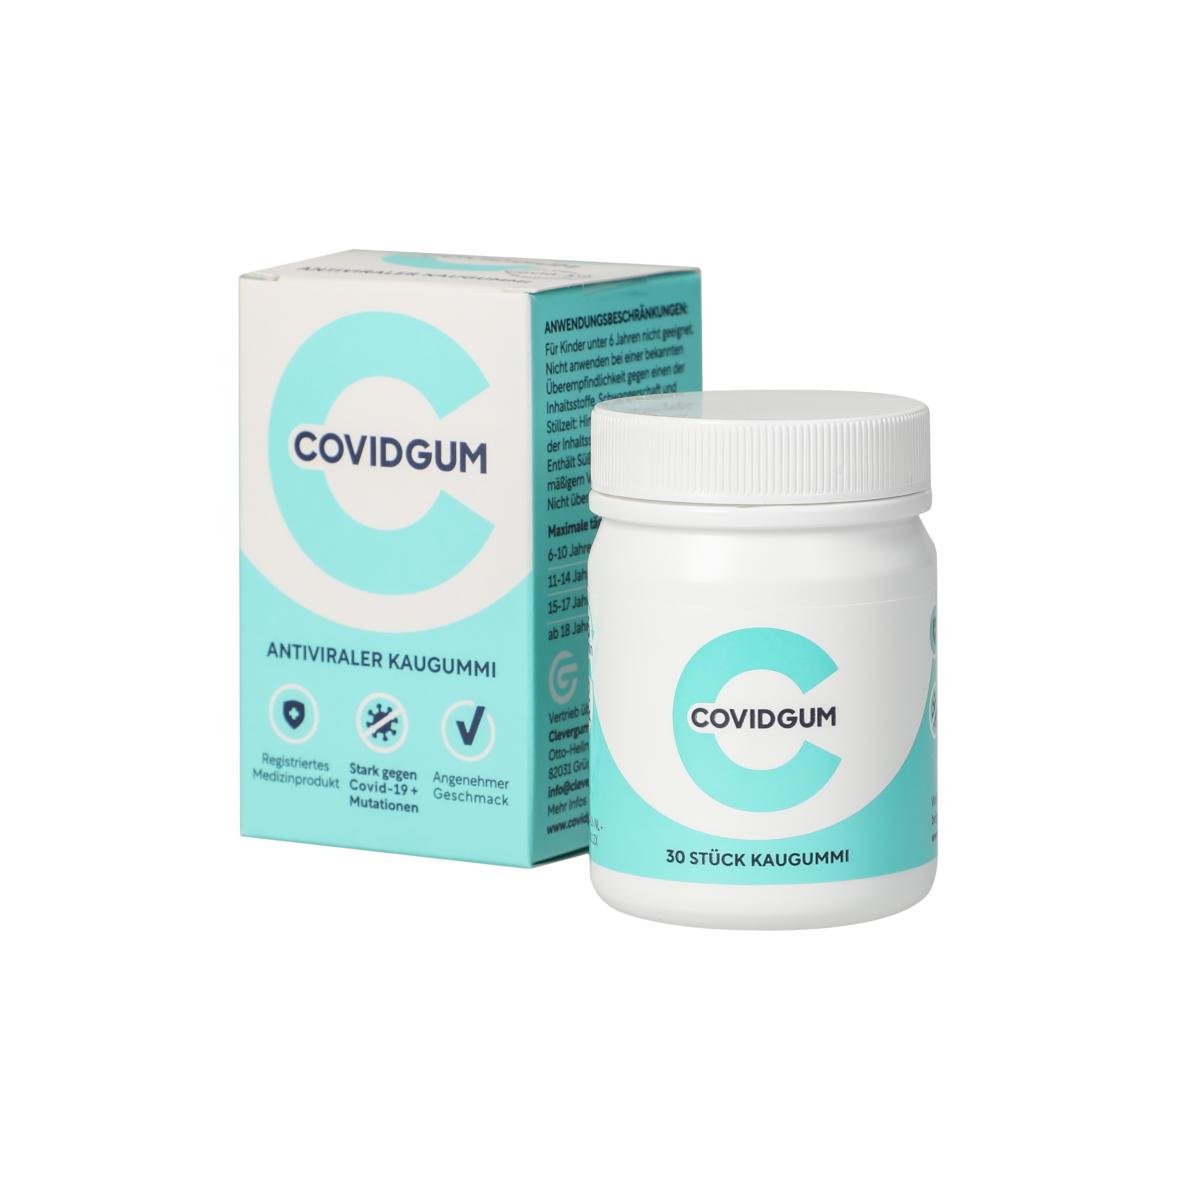 COVIDGUM – Antiviraler Kaugummi mehrfarbig